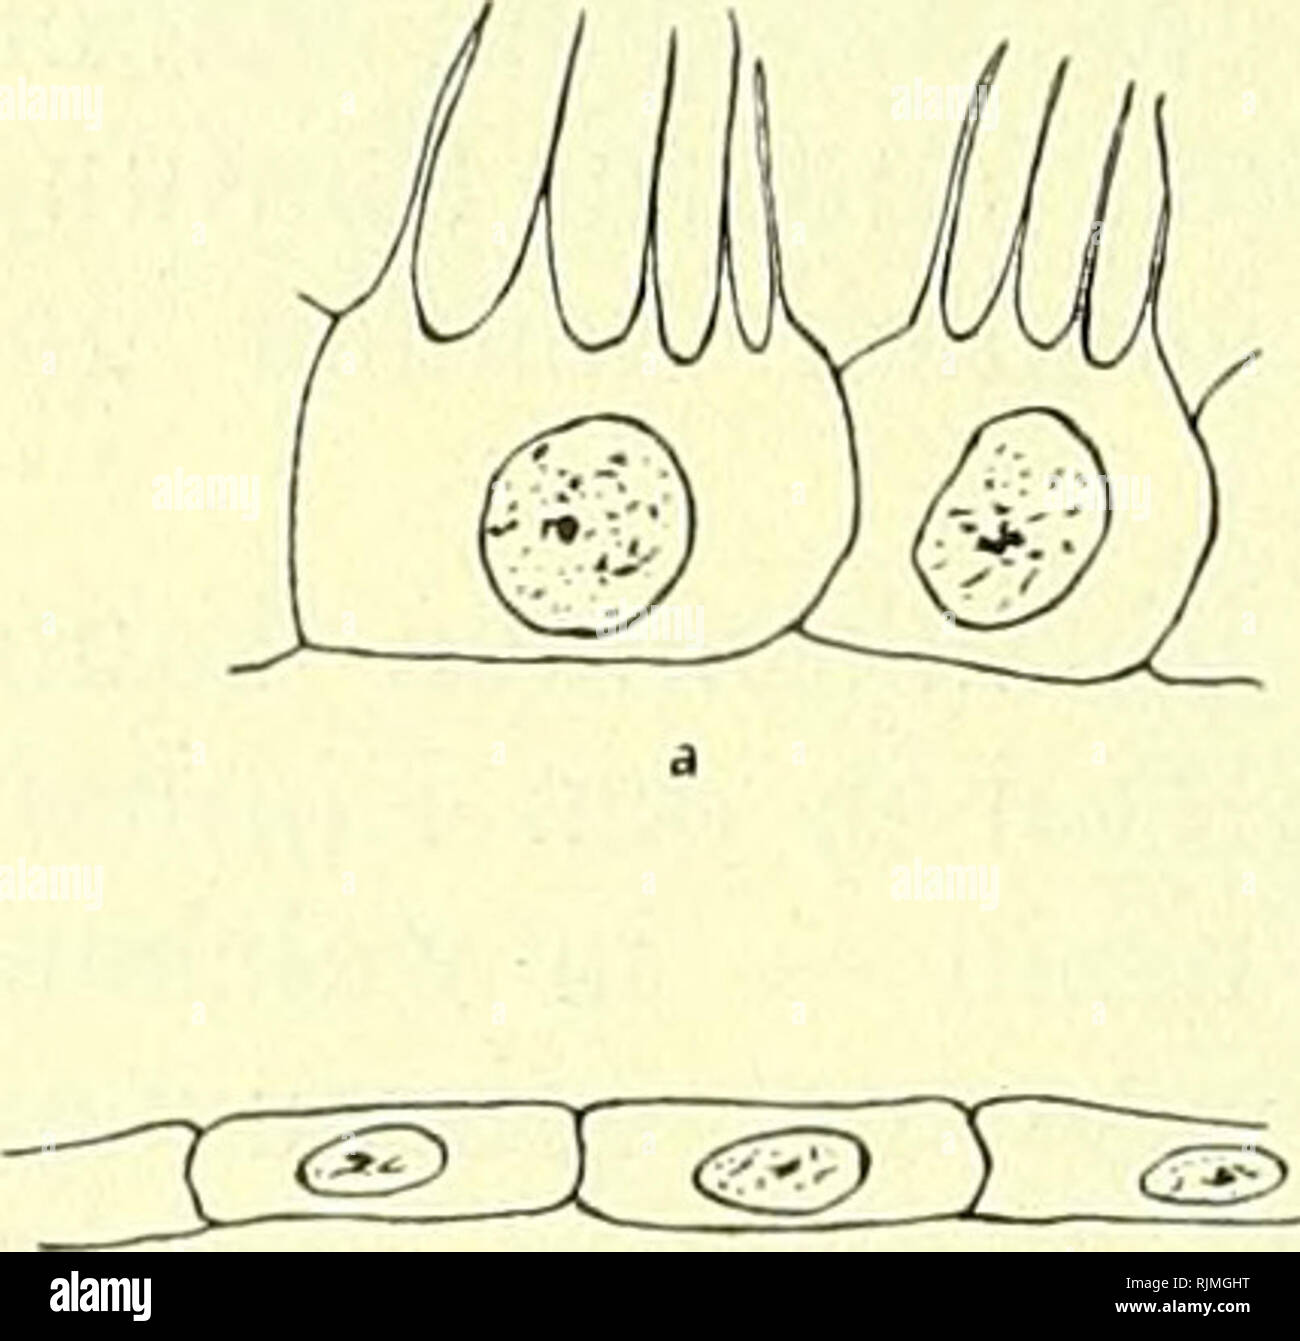 . Lehrbuch der Vergleichenden Mikroskopischen Anatomie der Wirbeltiere [electronic resource]. Vertebrates; Eye; Vertebrates; Eye. 158 Deckepithel. für die physikalische Optik des Auges ist, dürfte dem Pigmentepithel außerdem noch eine sekretorische Funktion zufallen, wie schon öfter angenommen wurde und neuerdings bewiesen zu sein scheint. Kolmer (1909) zeigt nämlich, daß an den Stäbchen, selten auch an den Zapfen der Retina der verschiedensten Wirbeltiere oft zahlreiche, meist kugelige Körper hängen, welche nichts anderes als Sekretionsprodukte des Pigmentepithels seien. Gefunden wurden sie b Stock Photo